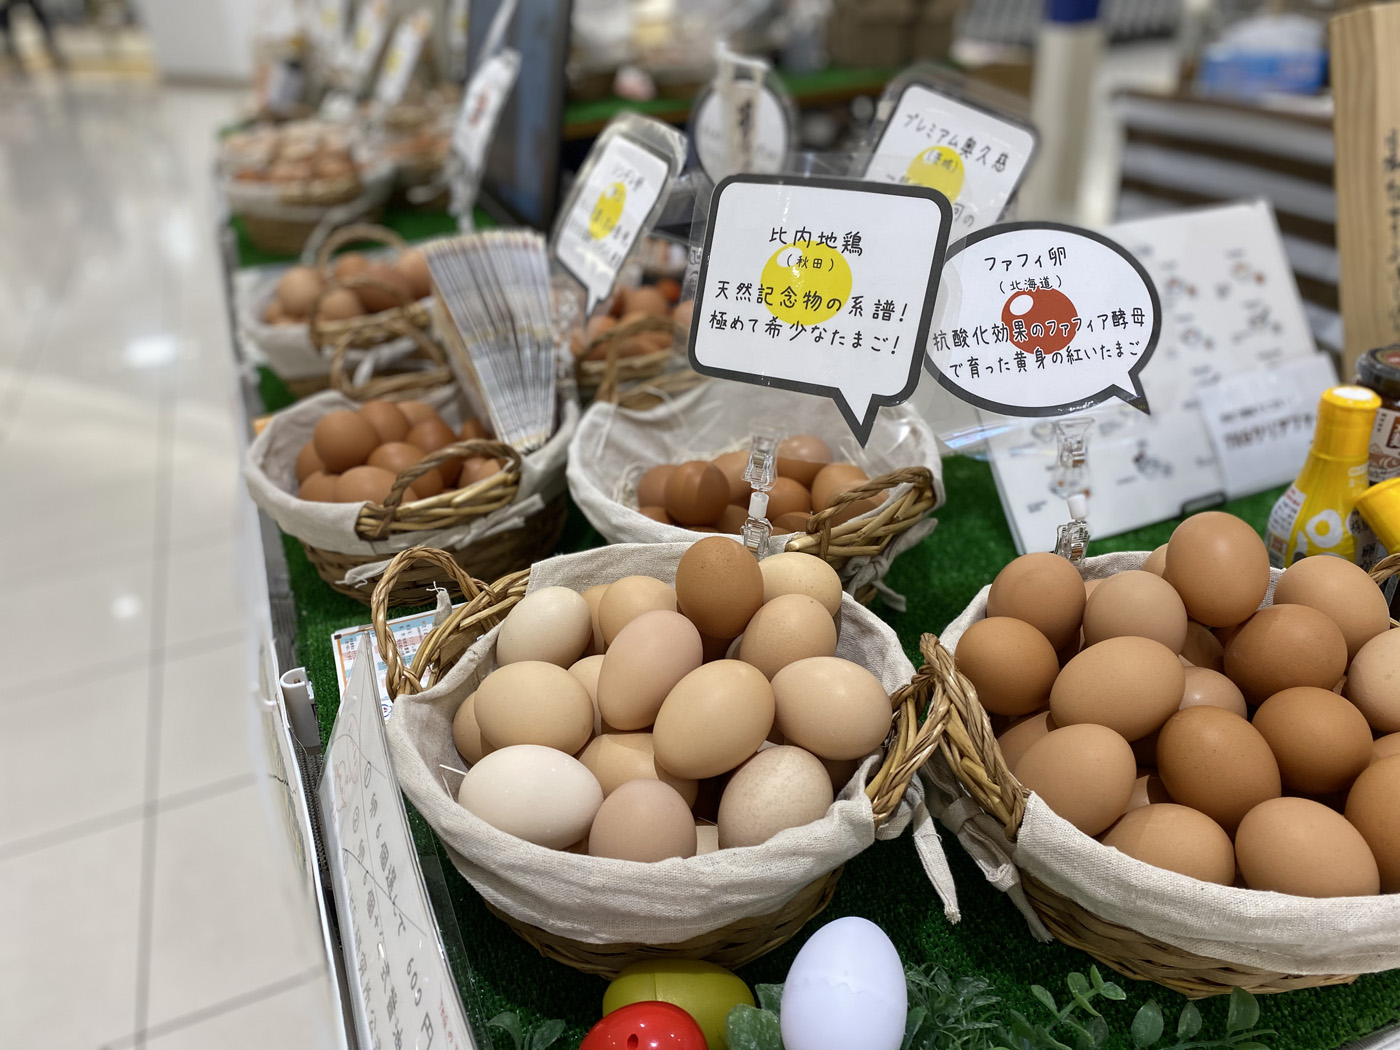 卵は1個から購入可能なので、いろいろな玉子の味見ができます